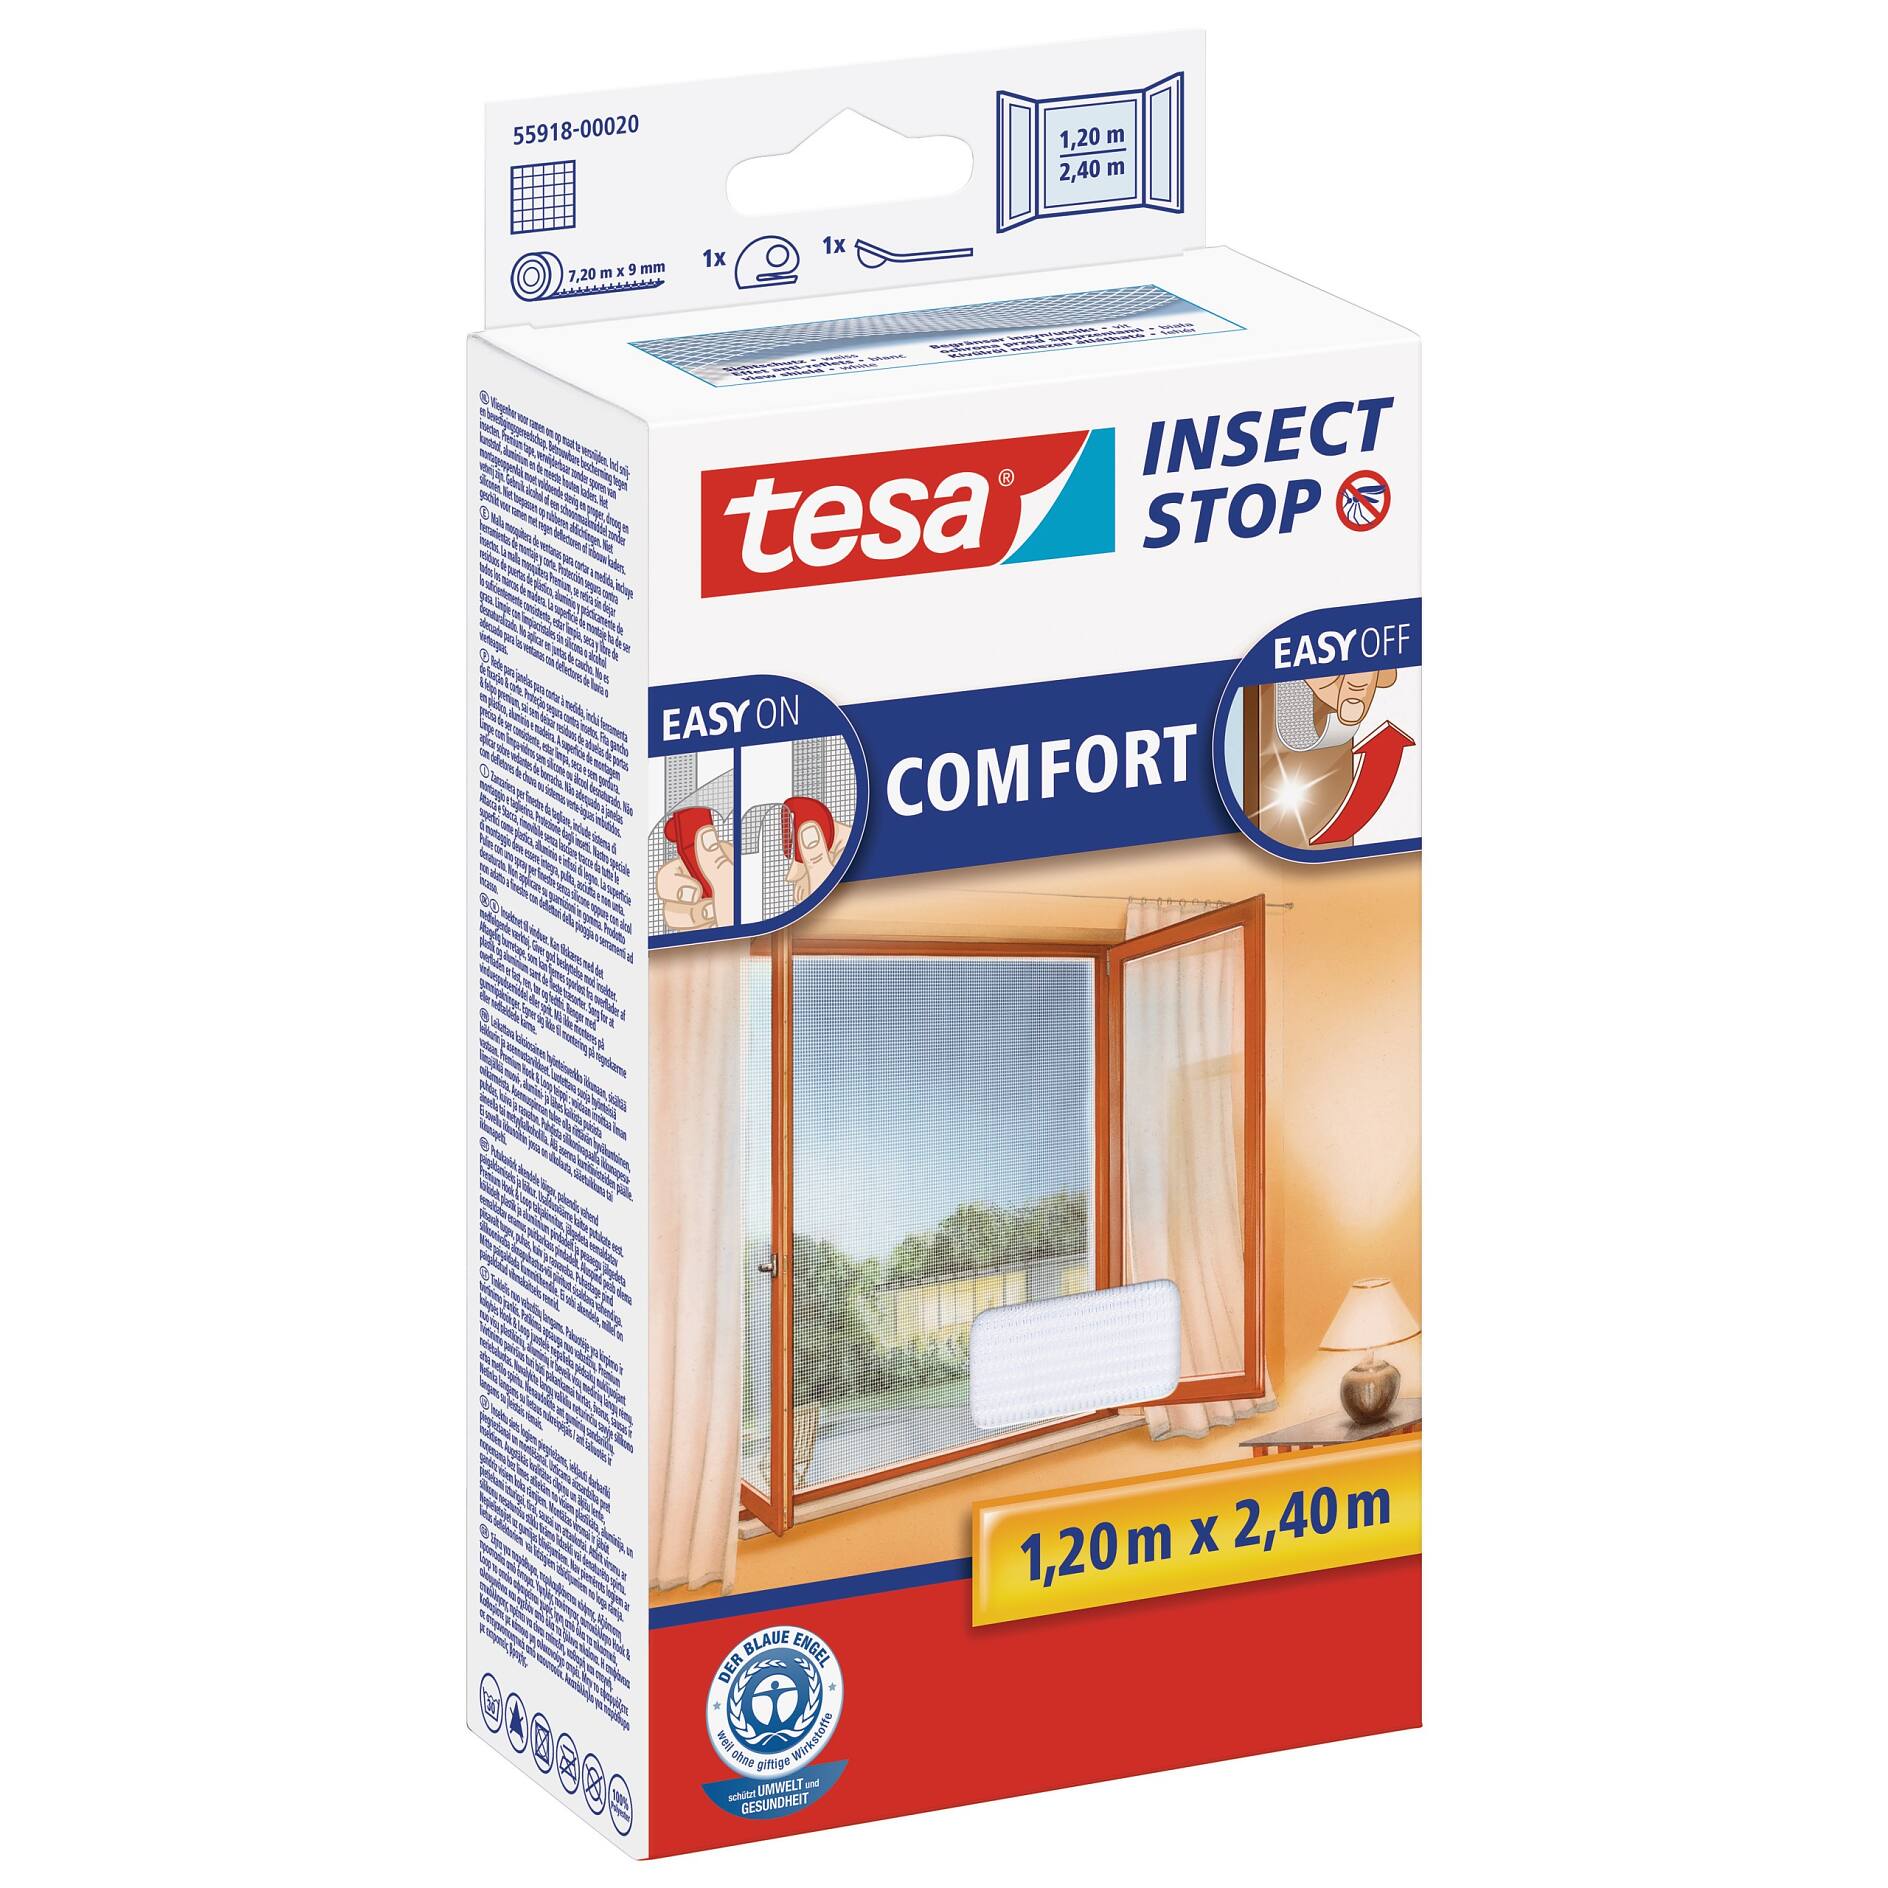 tesa® Insect Stop Fliegengitter COMFORT für Fenster - tesa